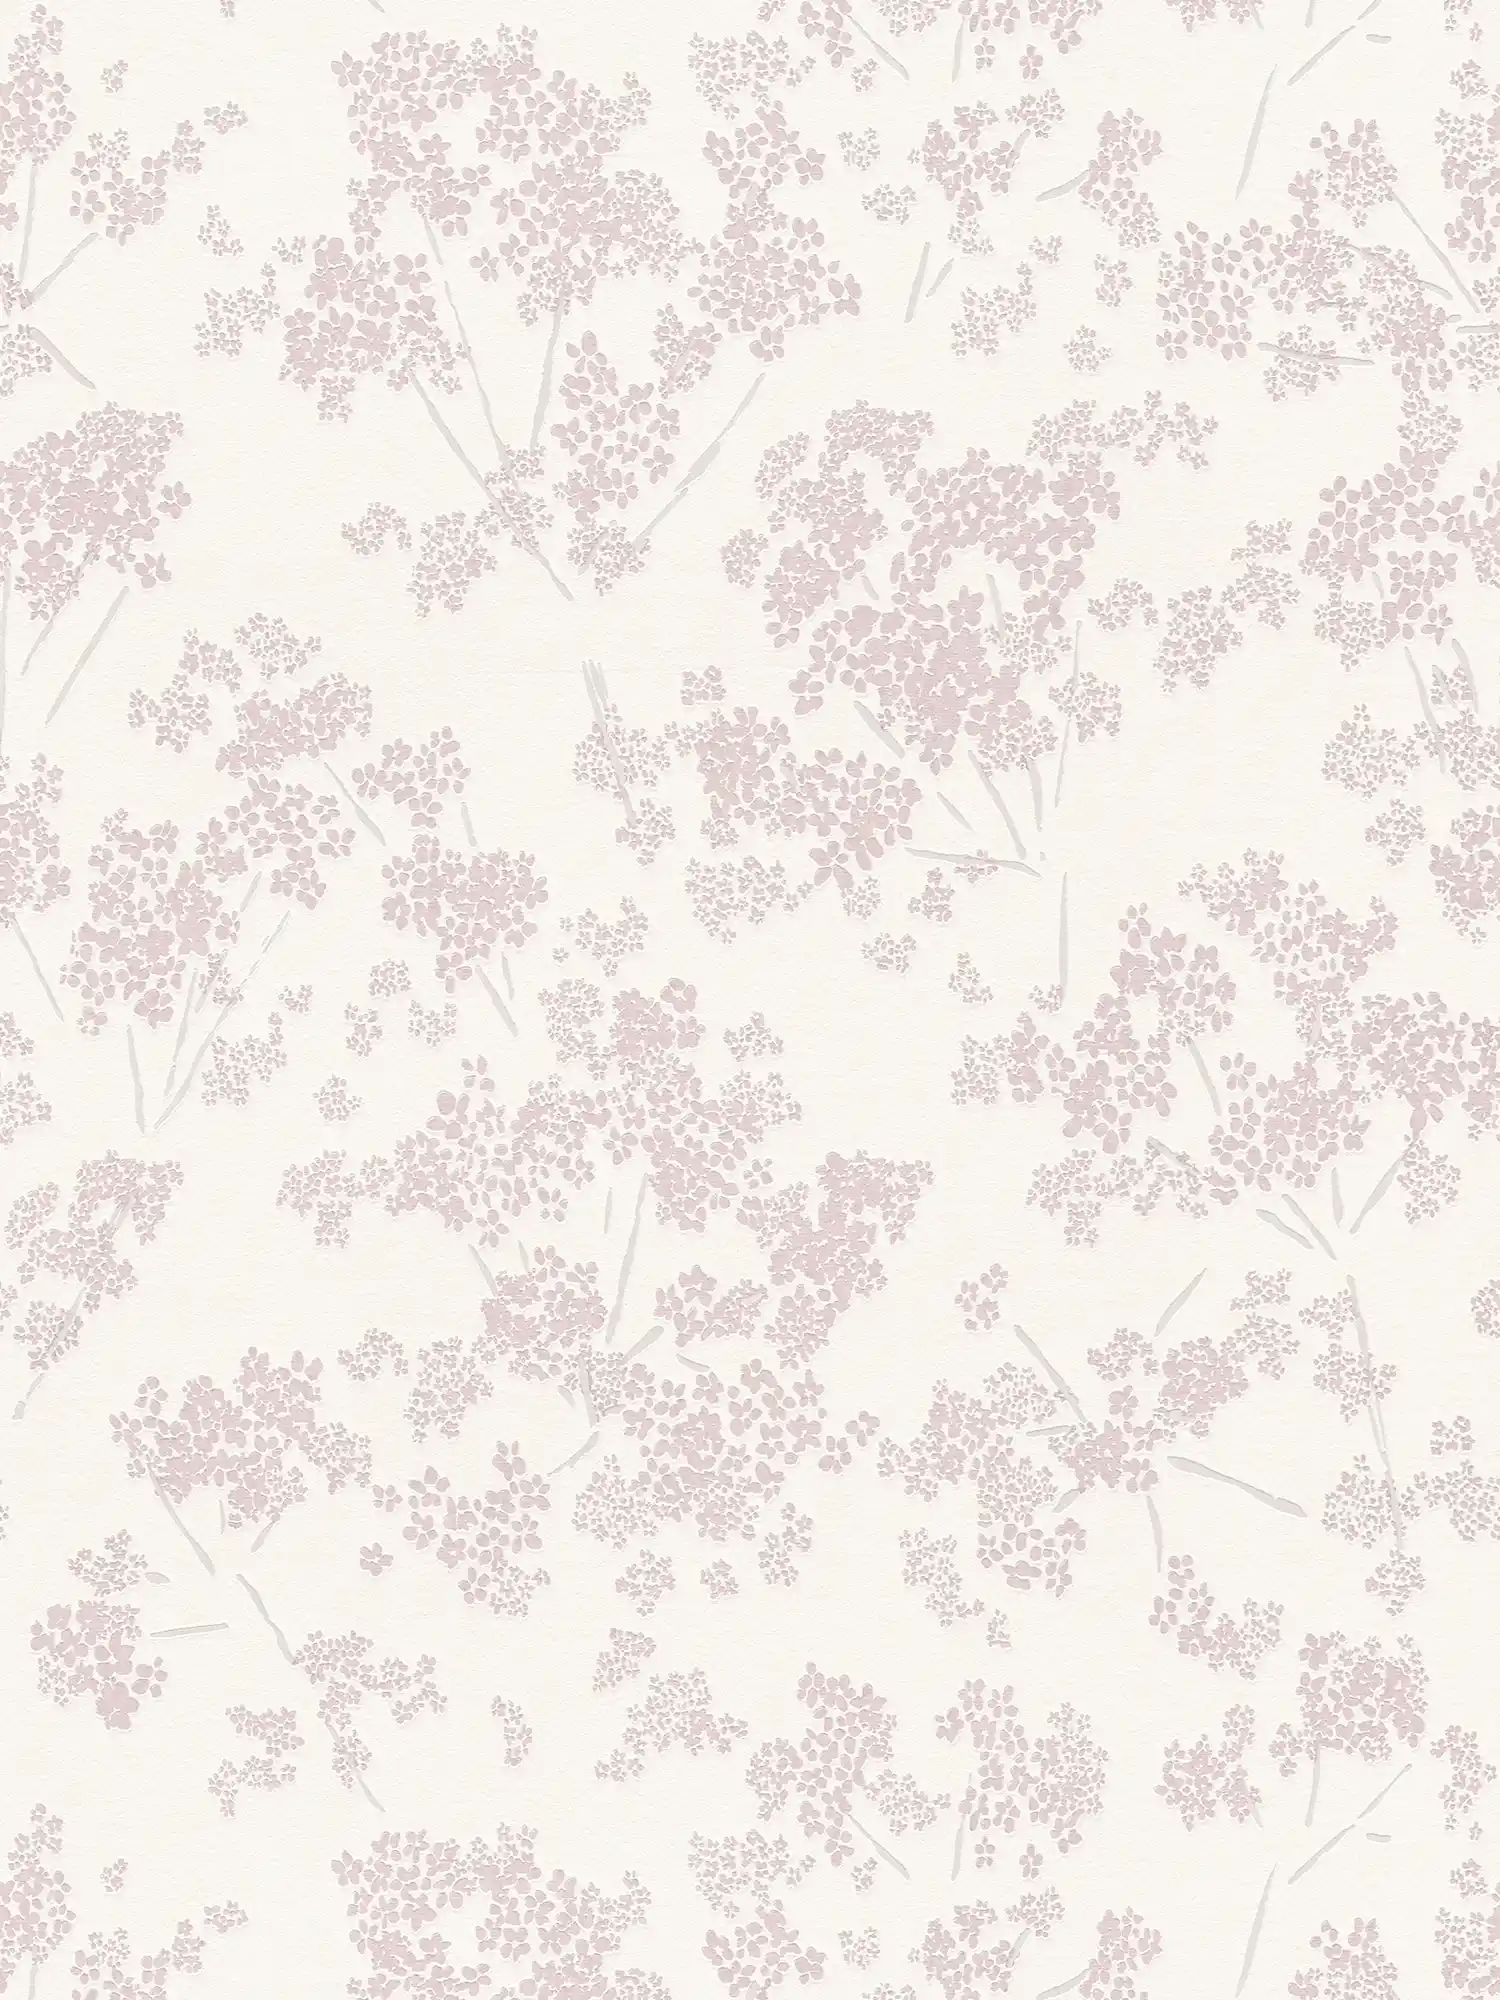 Bloemrijkvliesbehang met een speels bloemenpatroon - wit, roze
